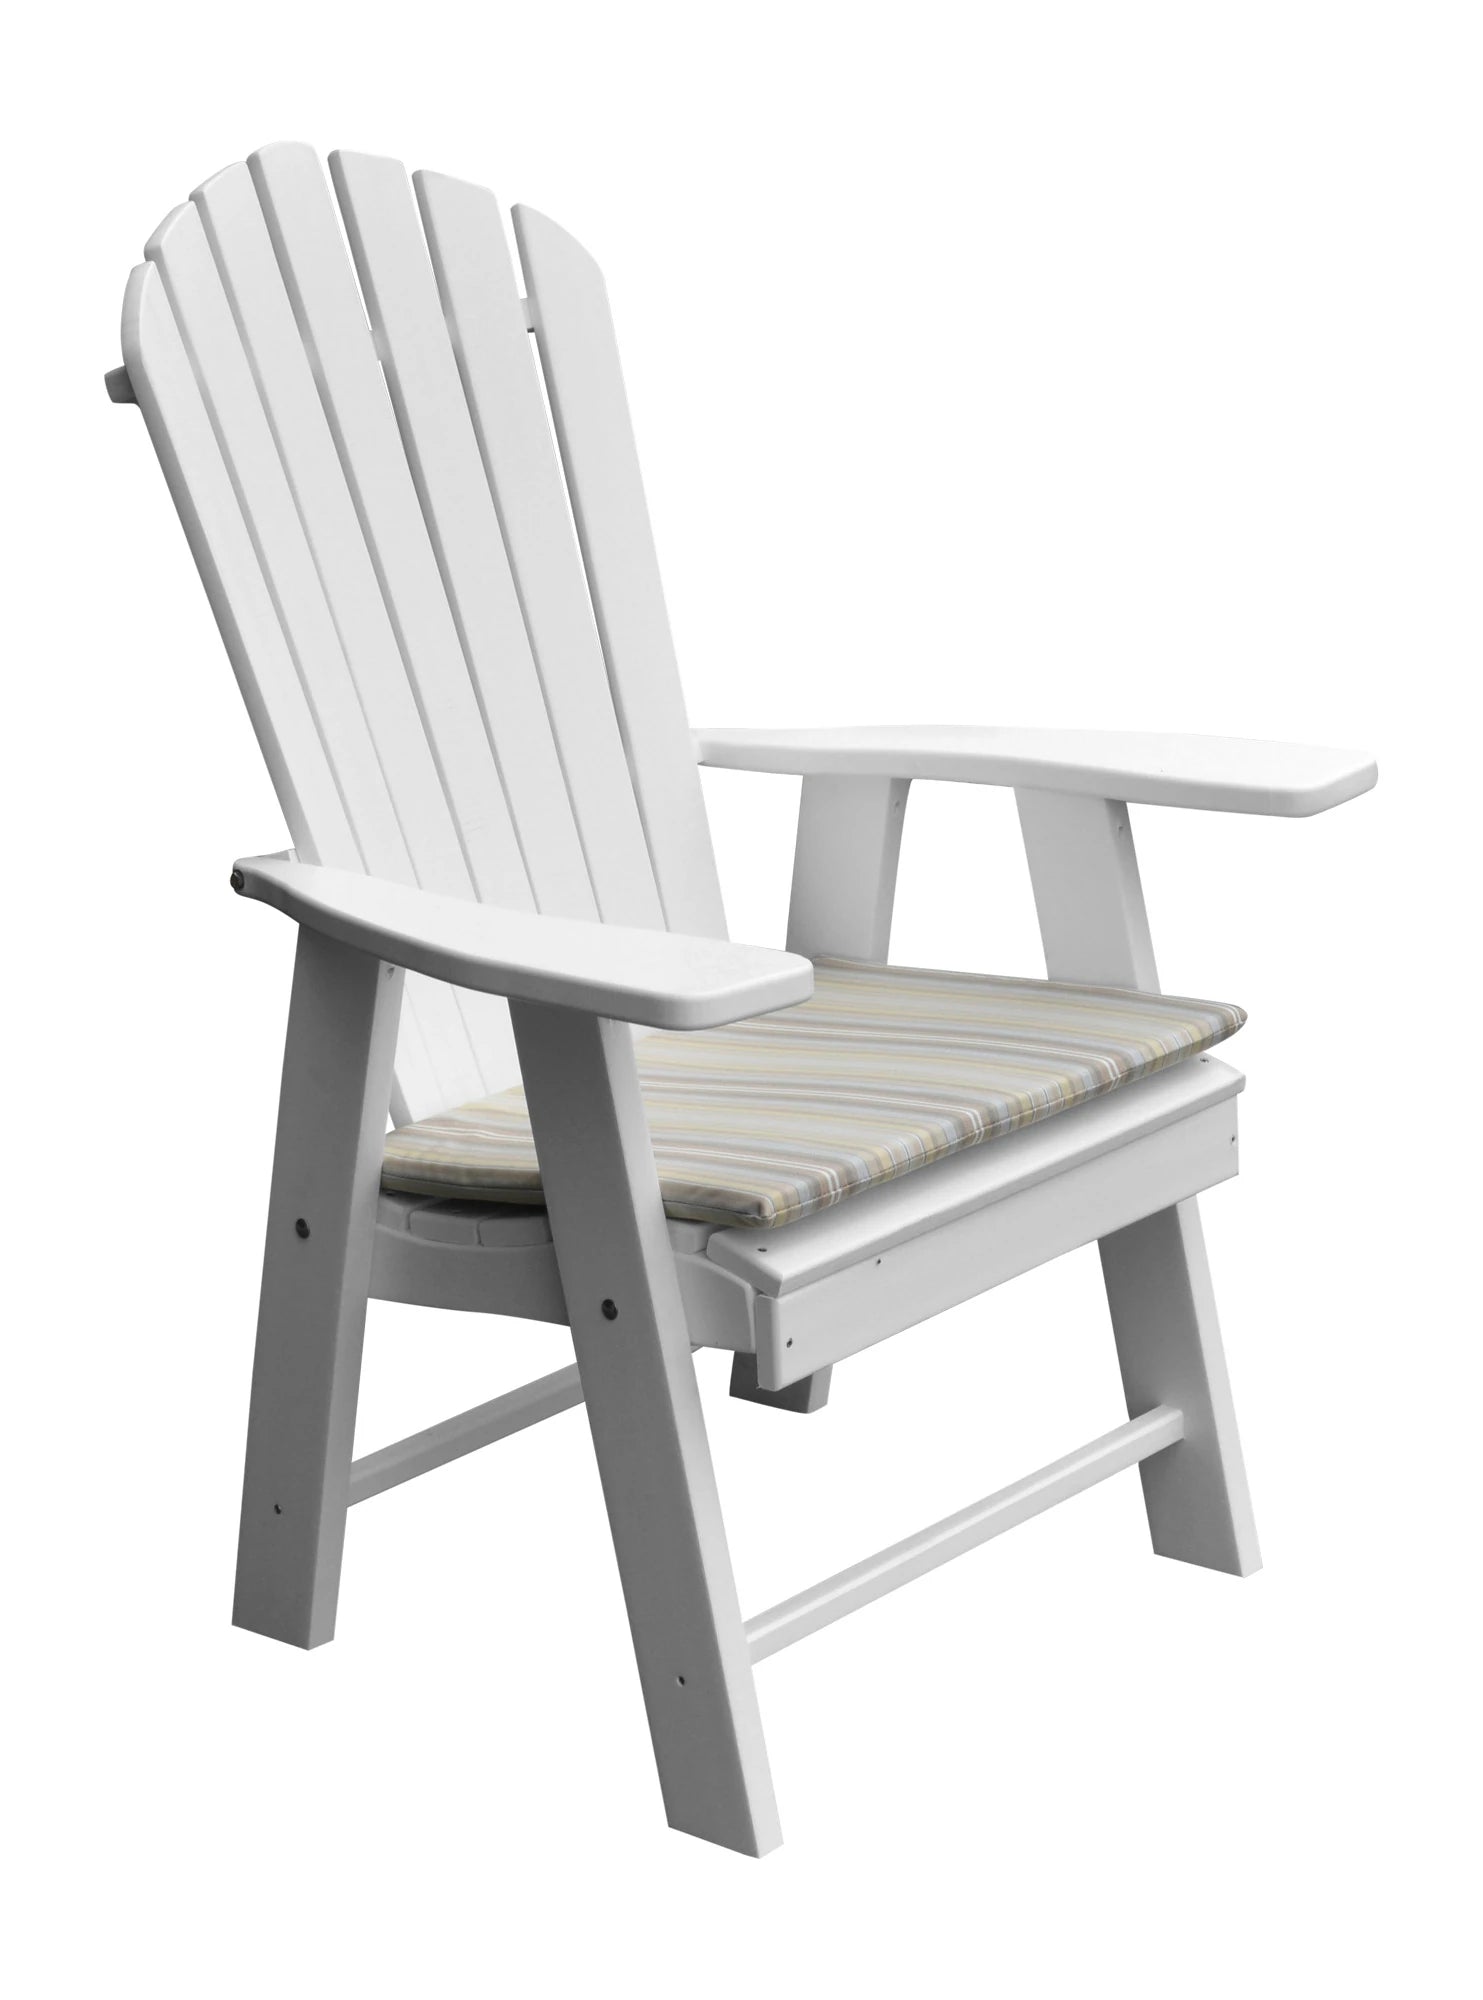 A&L Furniture Upright Adirondack Chair